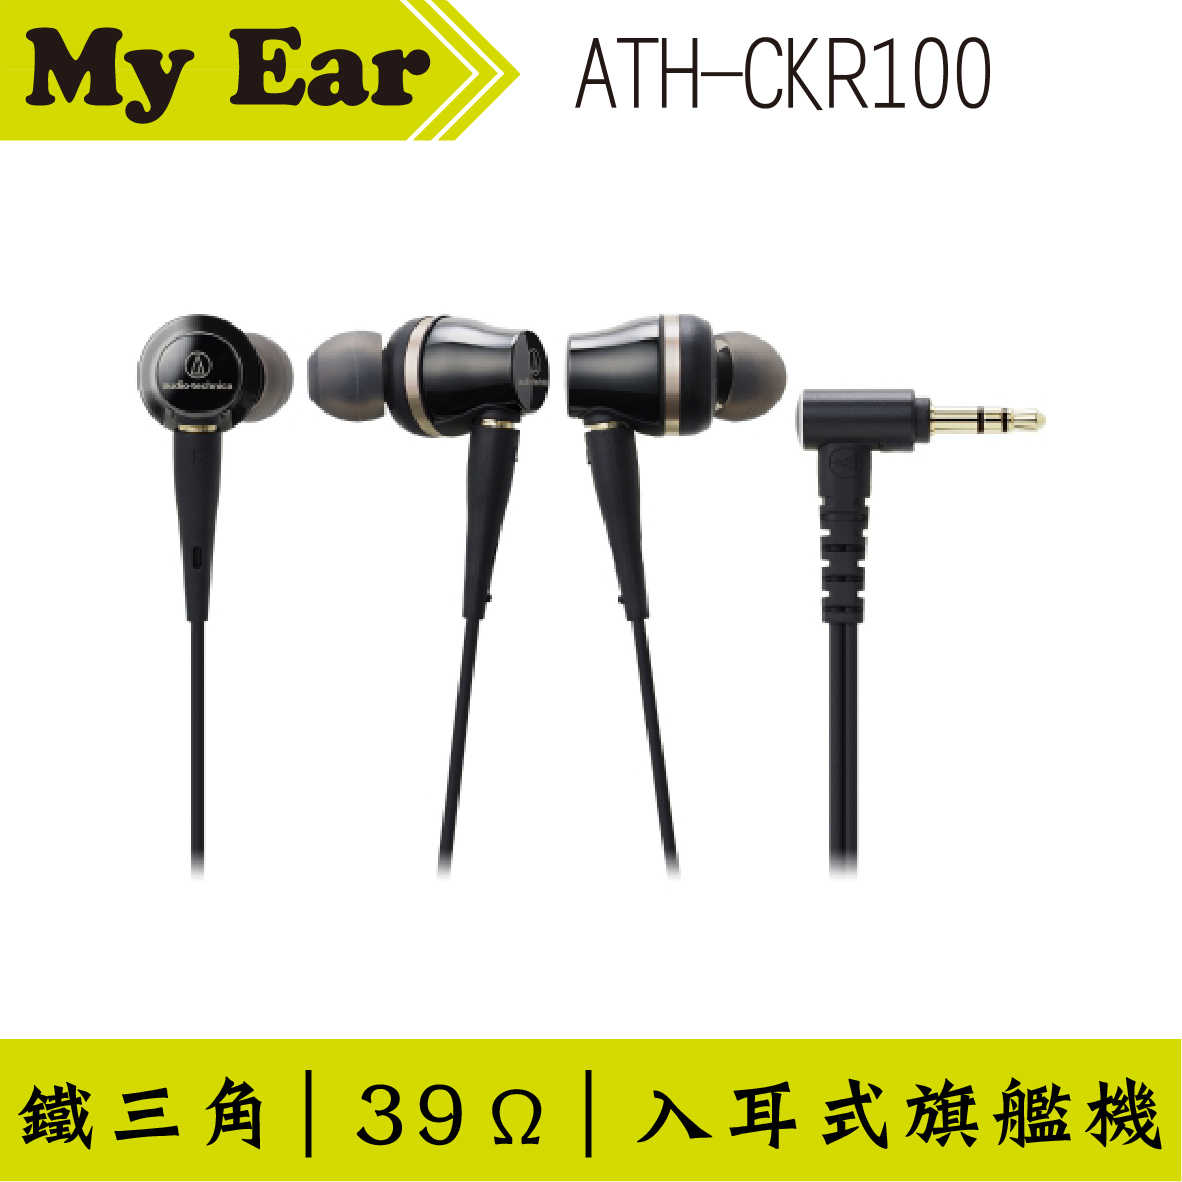 鐵三角 ATH-CKR100 雙動圈 旗艦 耳道式耳機 | My Ear專門店